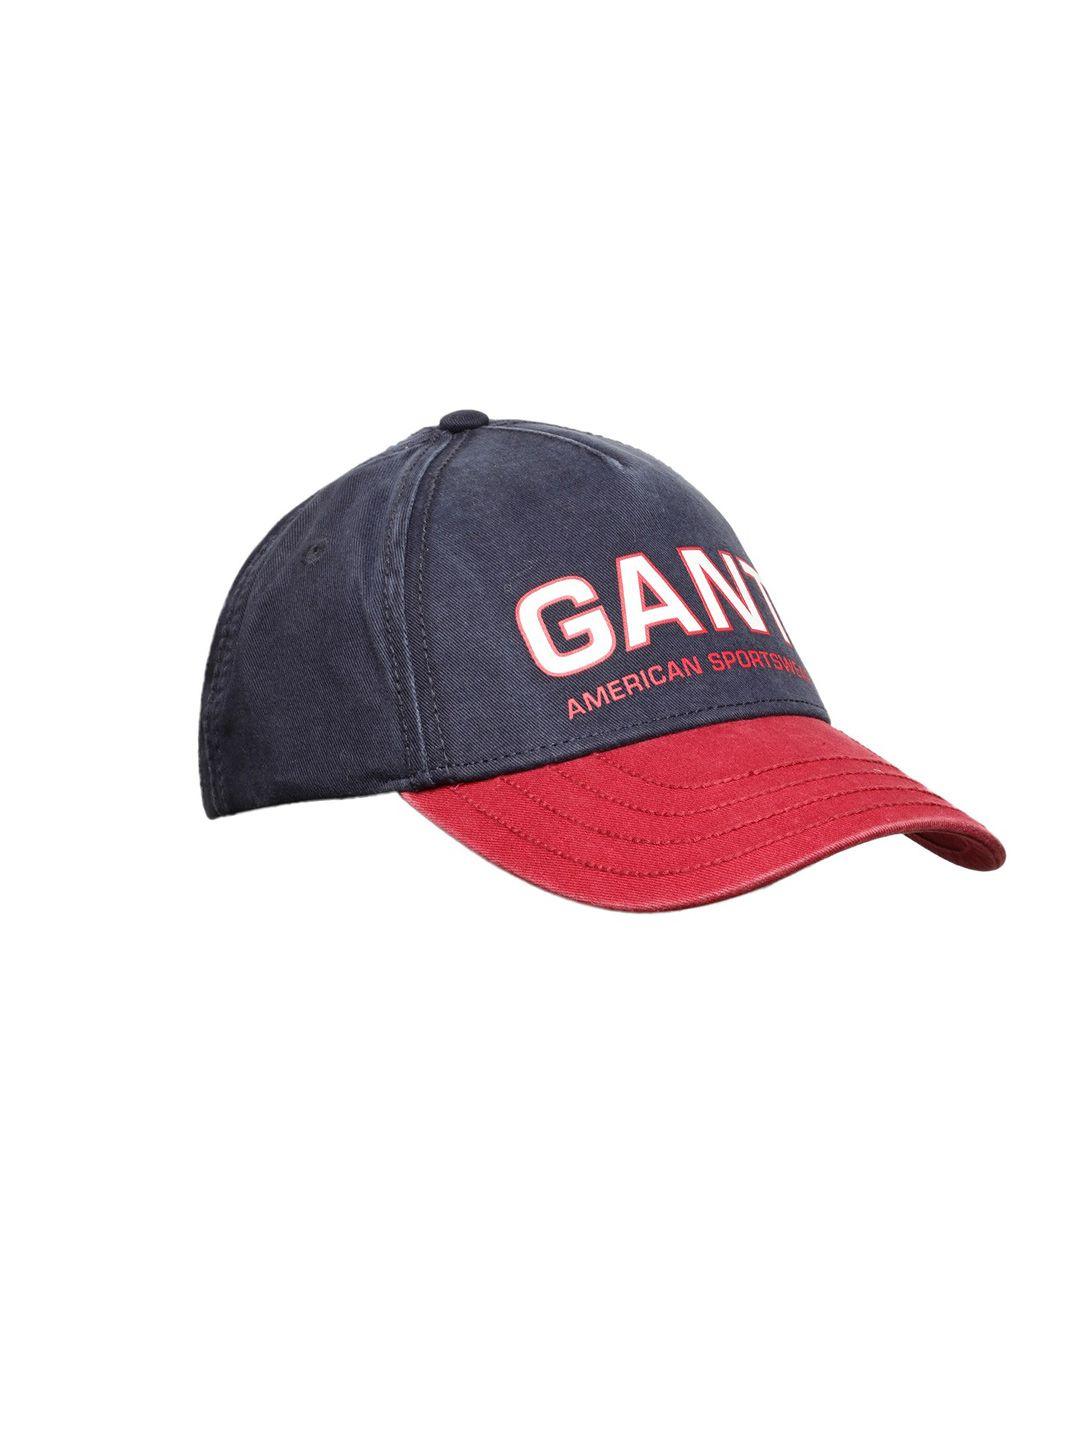 gant men blue & red baseball cap